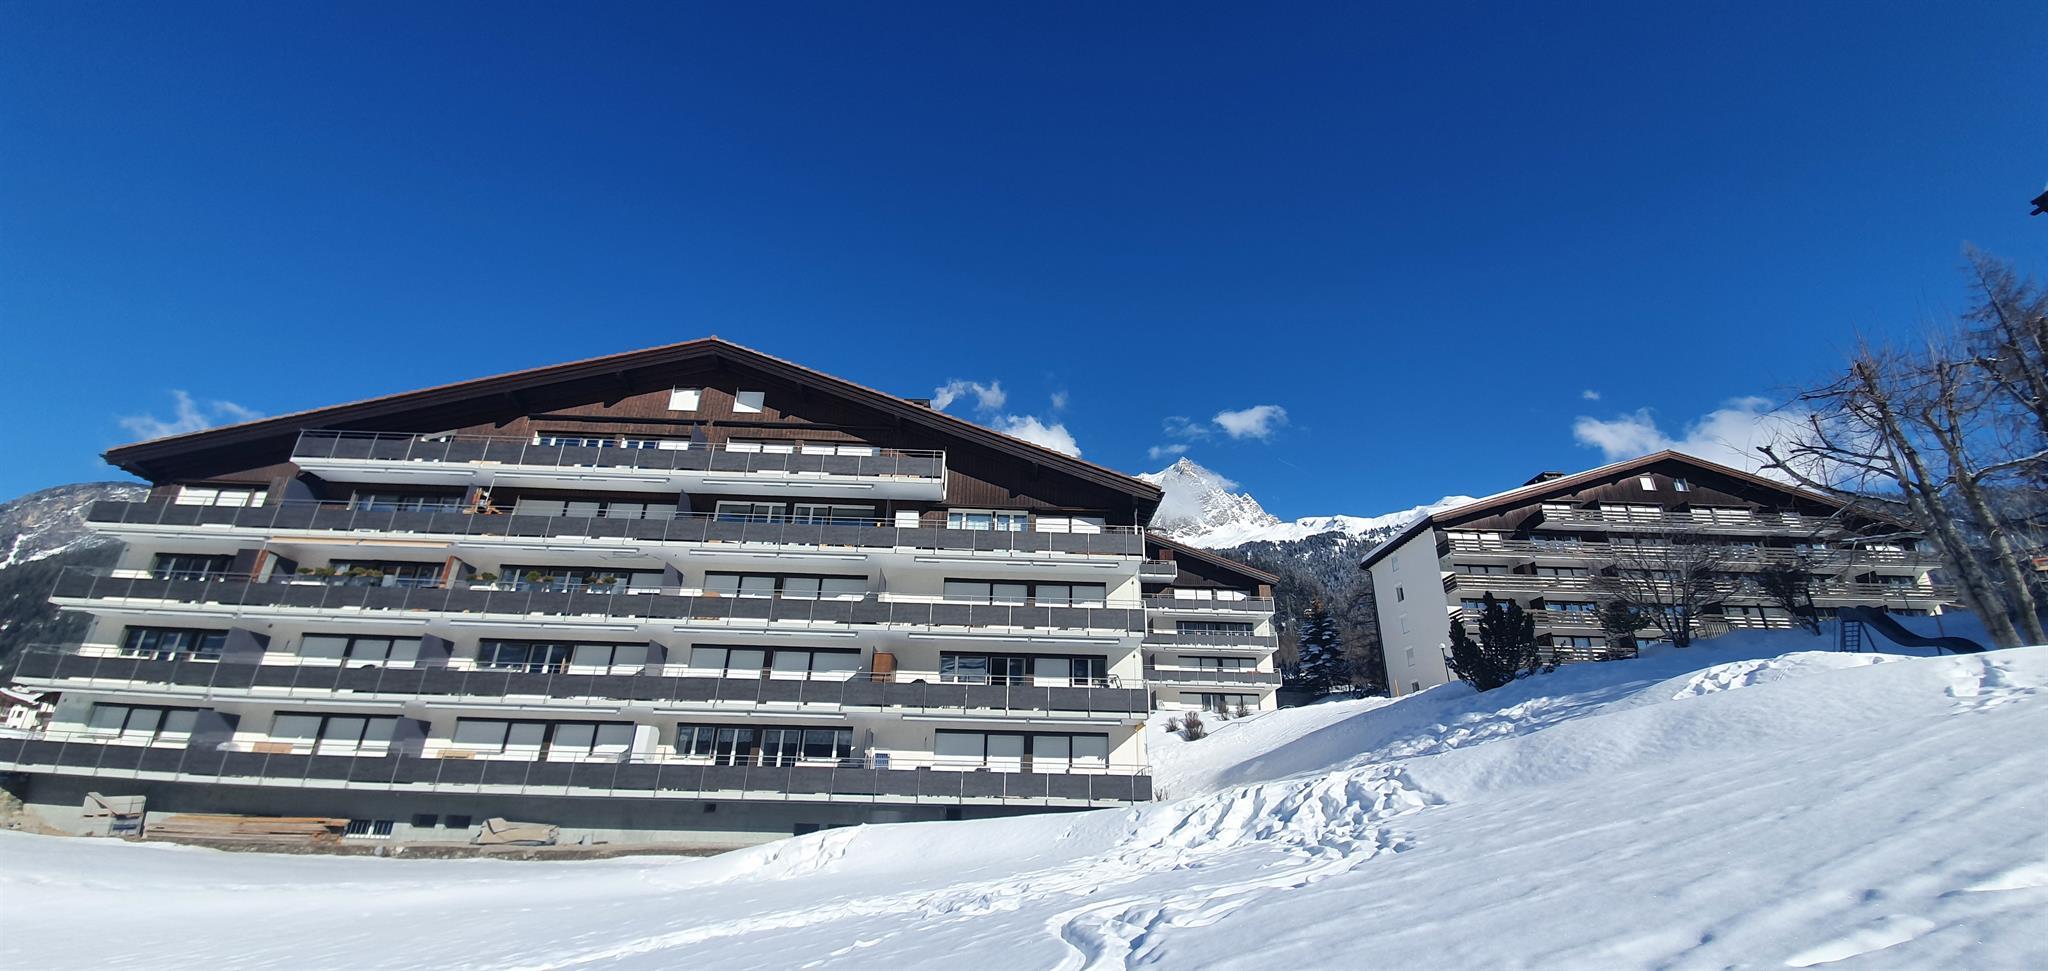 Las Vals D15 3 Zimmerwohnung - 5 Betten Ferienwohnung in der Schweiz